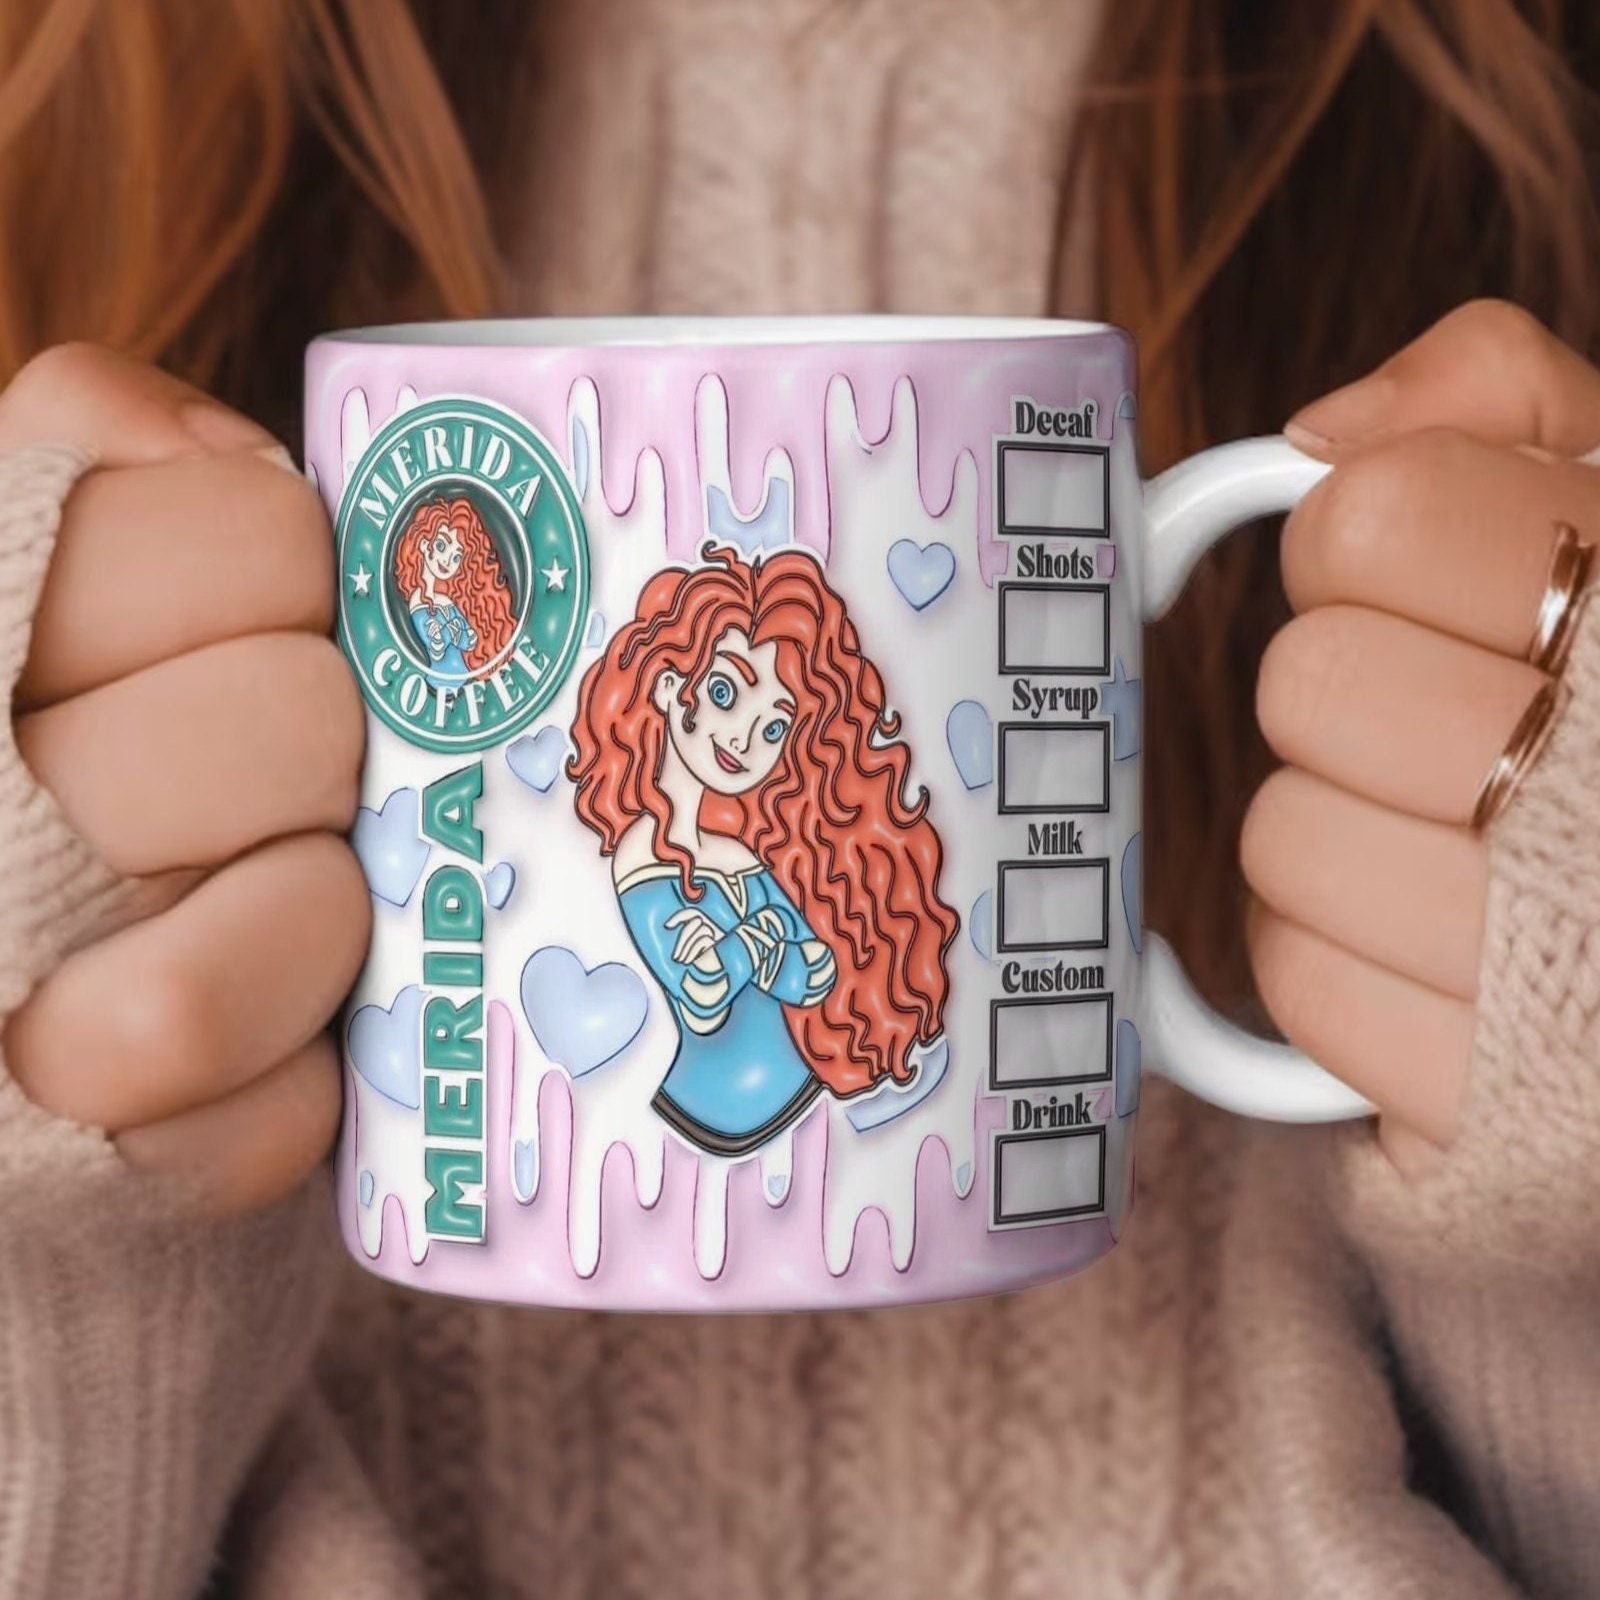 Disney Princess Courage 24oz Ceramic Soup Mug